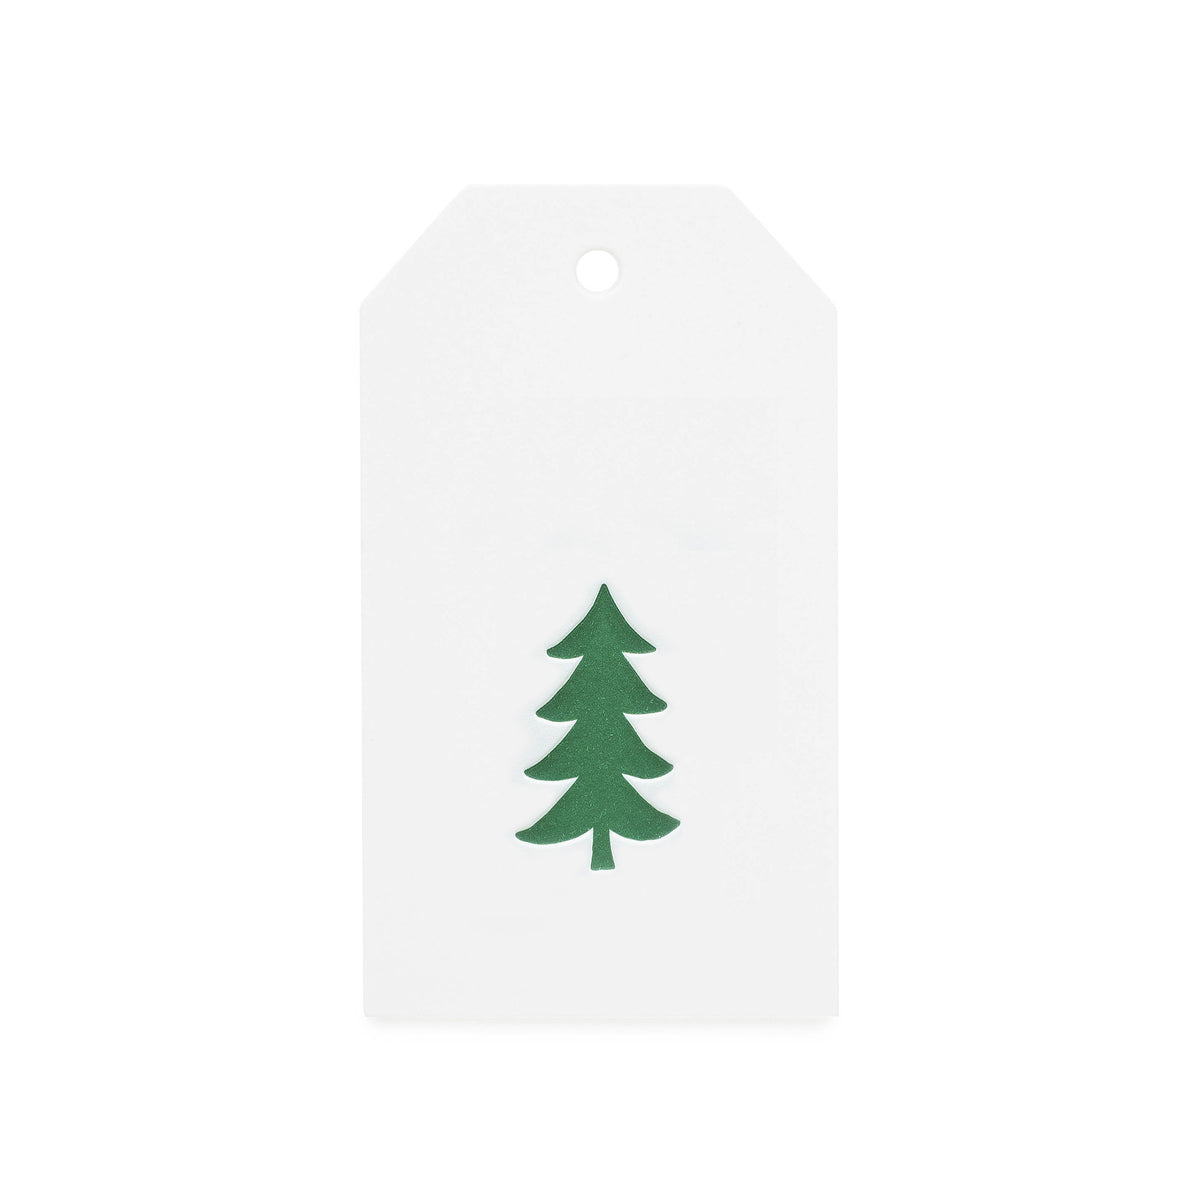 Green Christmas Tree Gift Tag